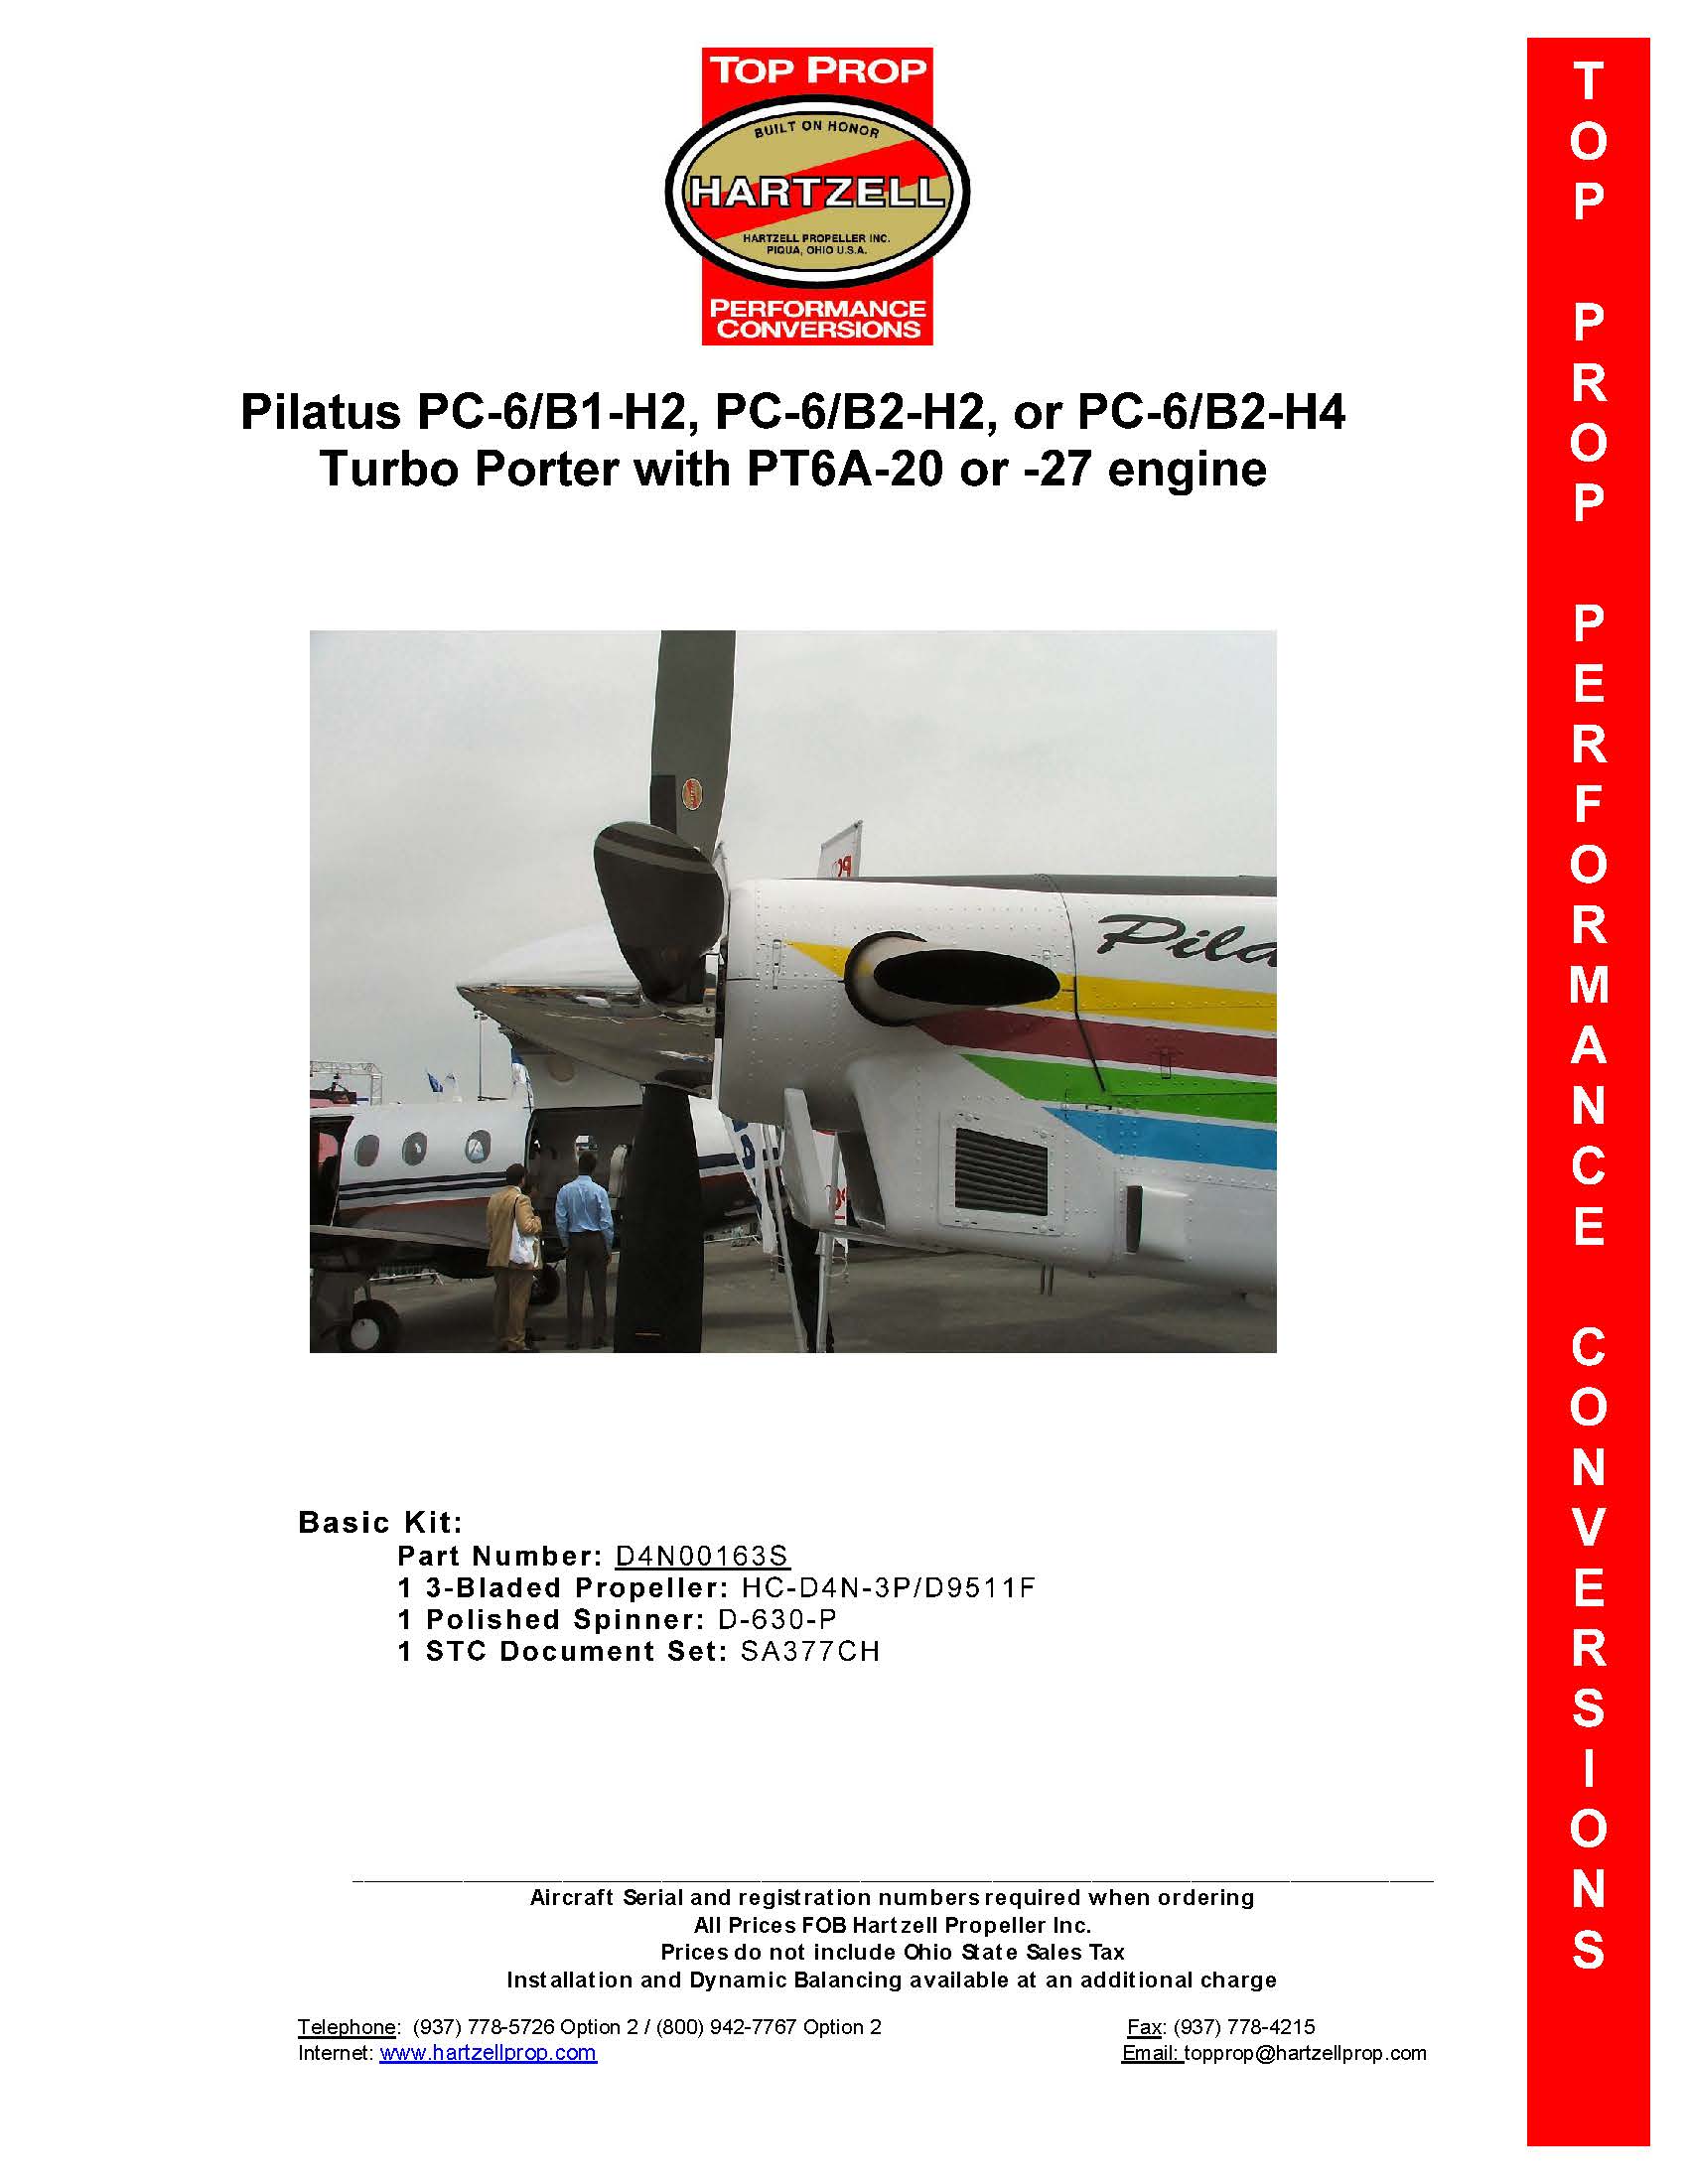 Pilatus-PC-6-D4N00163S-PAGE-1